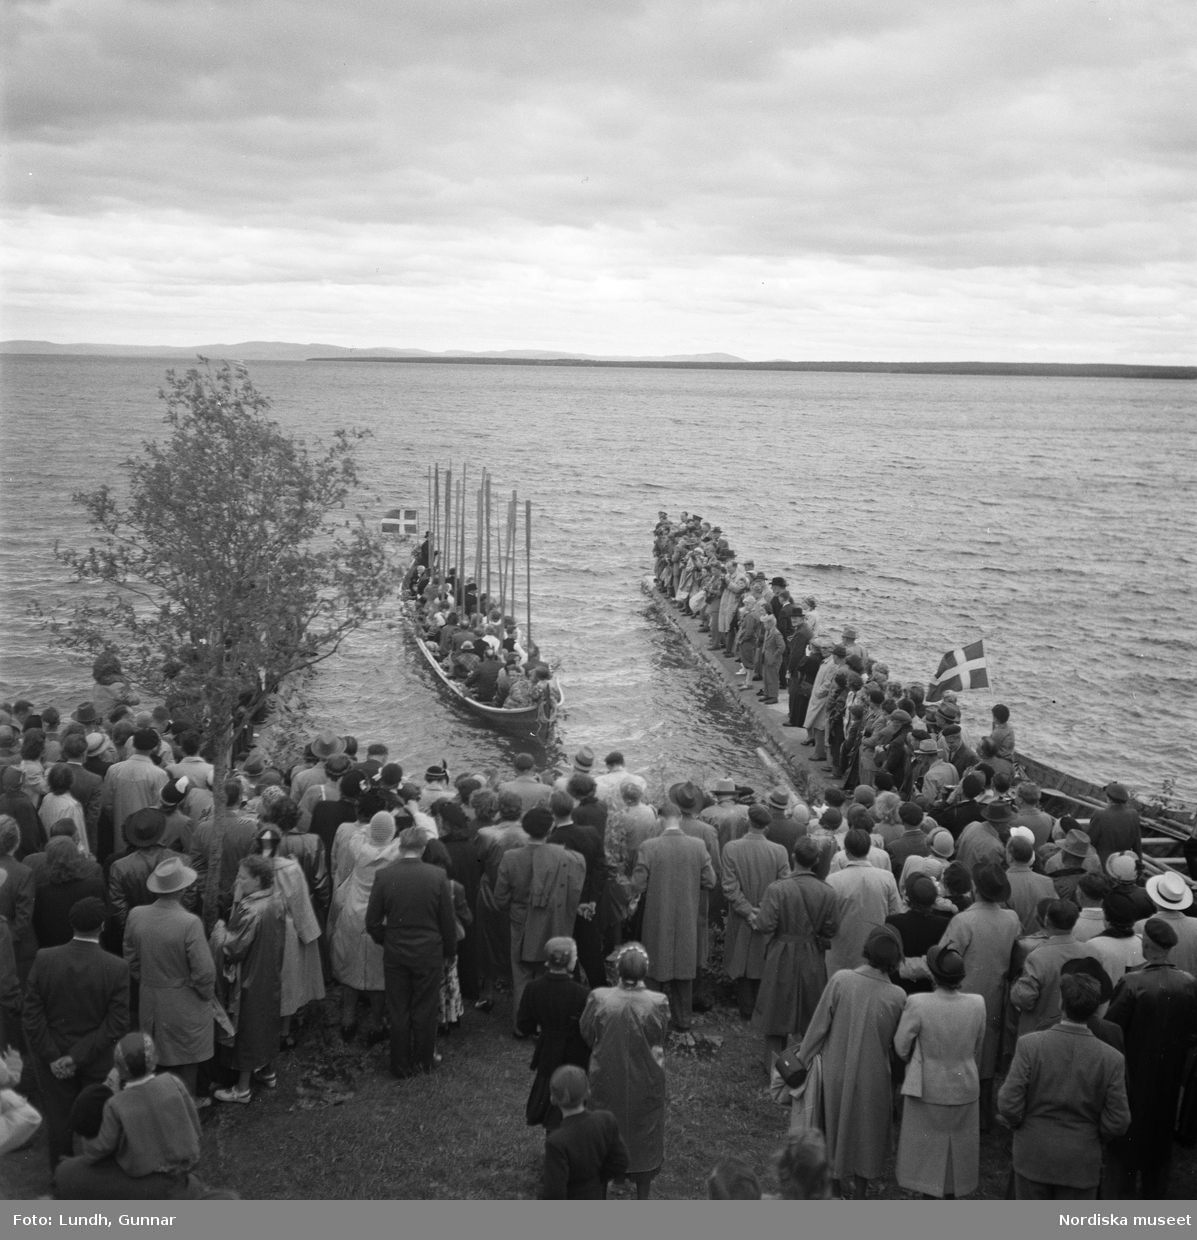 Motiv: (ingen anteckning) ;
En folksamling vid midsommarfirande, en folksamling står på stranden vid en sjö, kvinnor och män i folkdräkt ror en kyrkbåt.